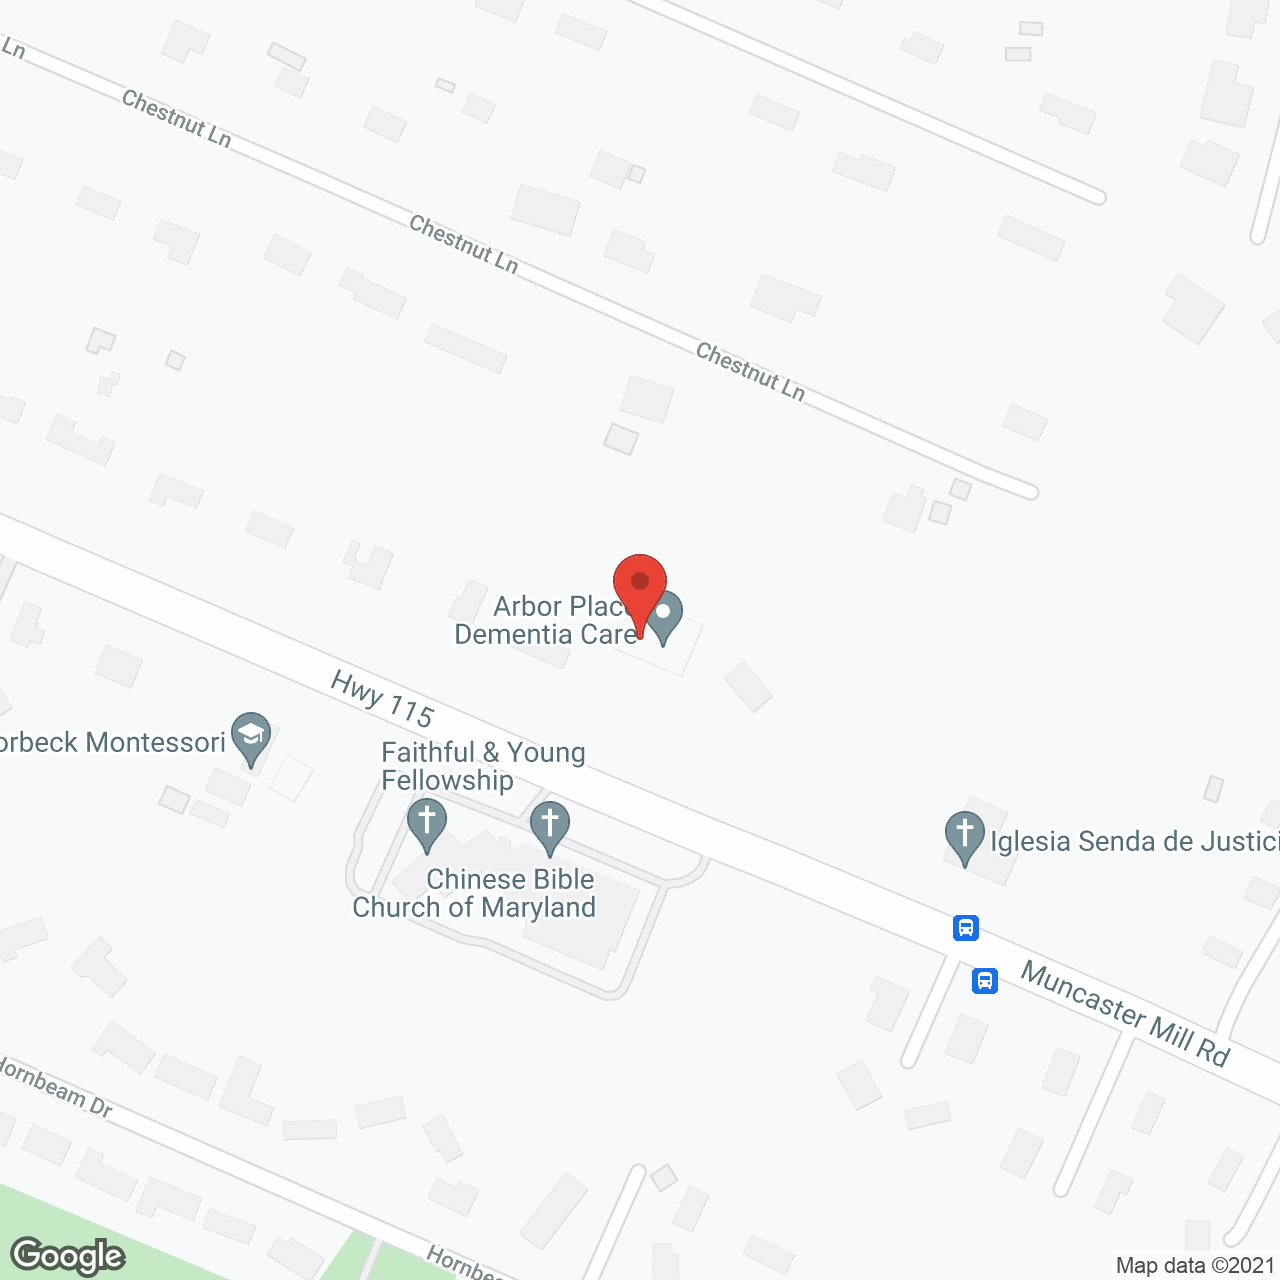 Arbor Place - Dementia Care in google map